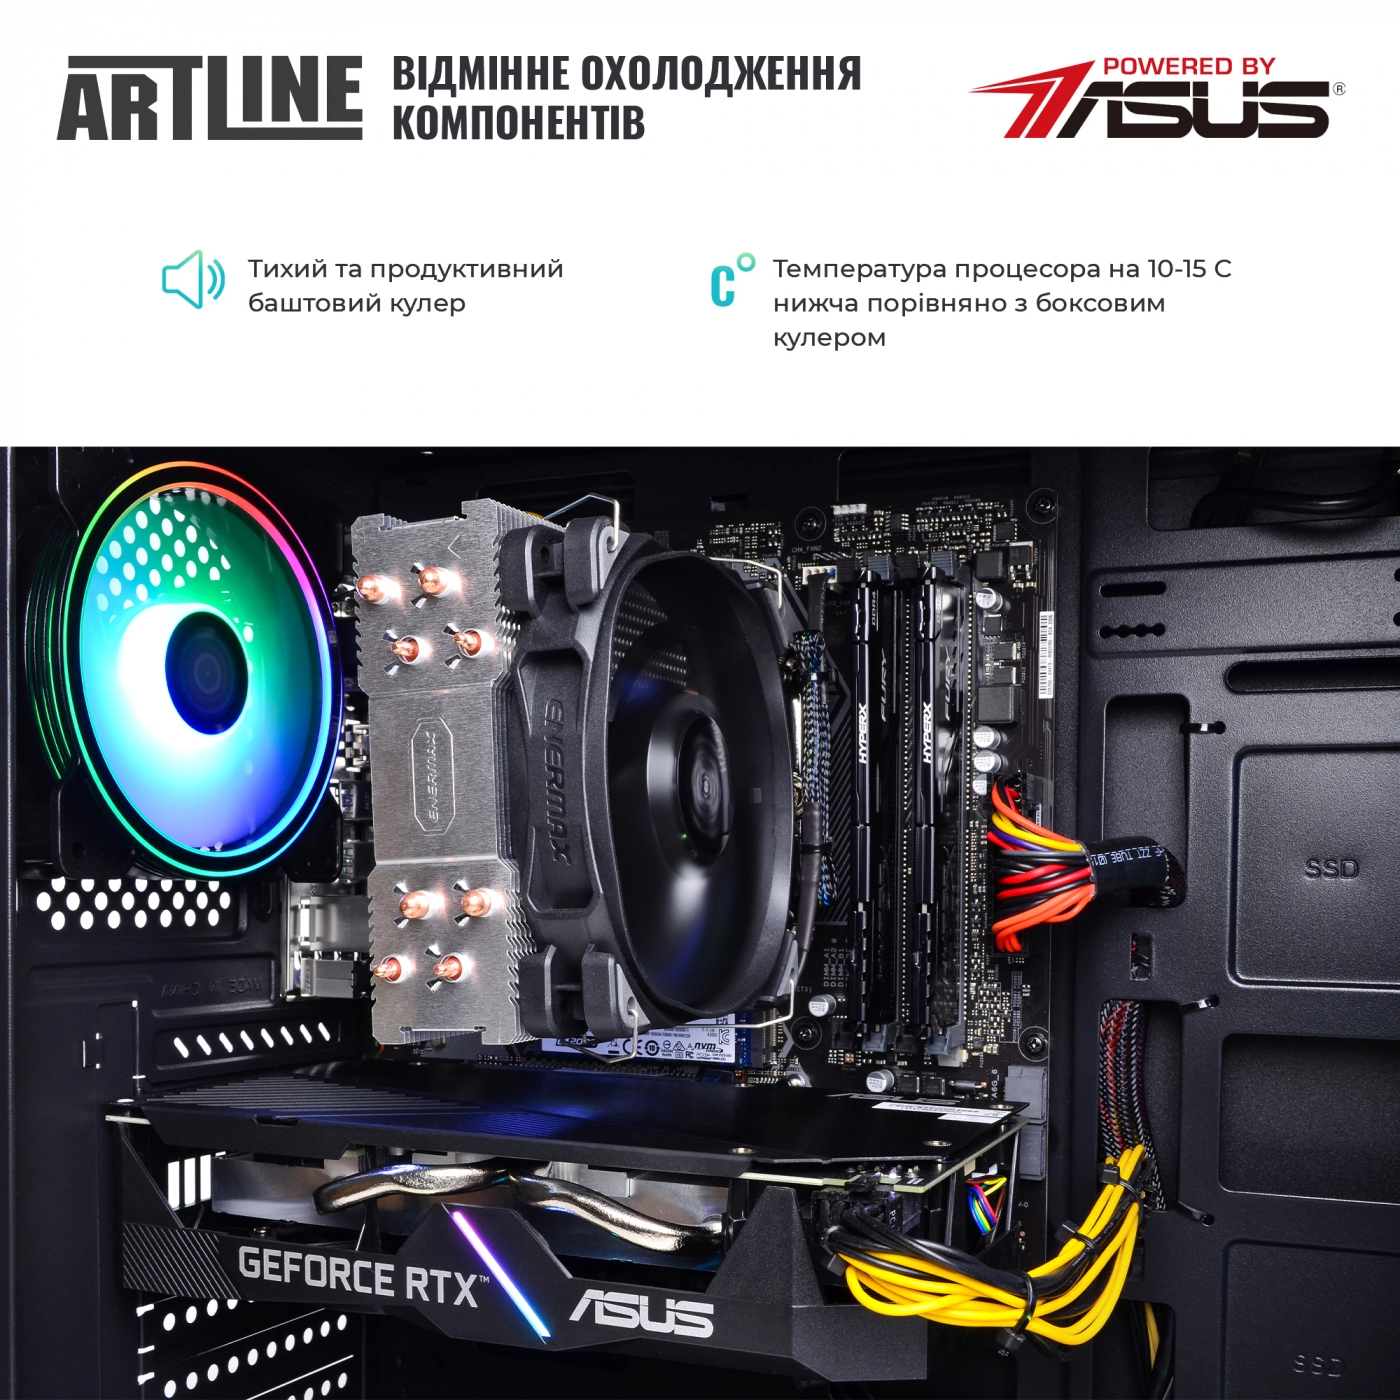 Купить Компьютер ARTLINE Gaming X77v44 - фото 8